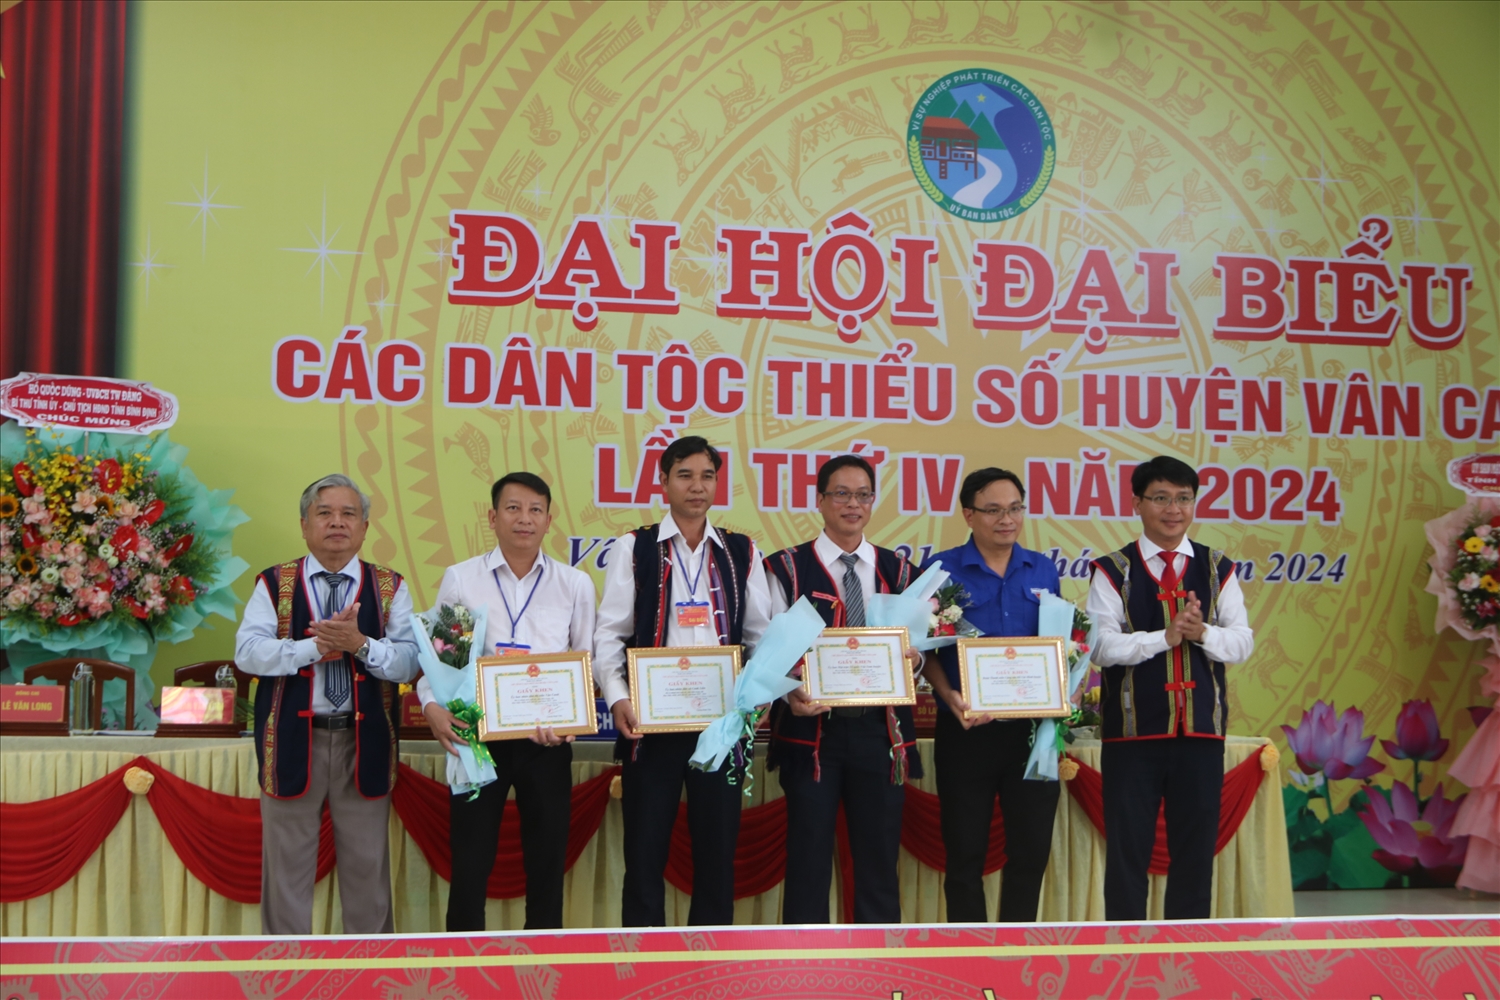 UBND huyện Vân Canh đã tặng 53 giấy khen cho 4 tập thể, 49 cá nhân có thành tích xuất sắc tiêu biểu trong công tác dân tộc giai đoạn 2019 - 2024